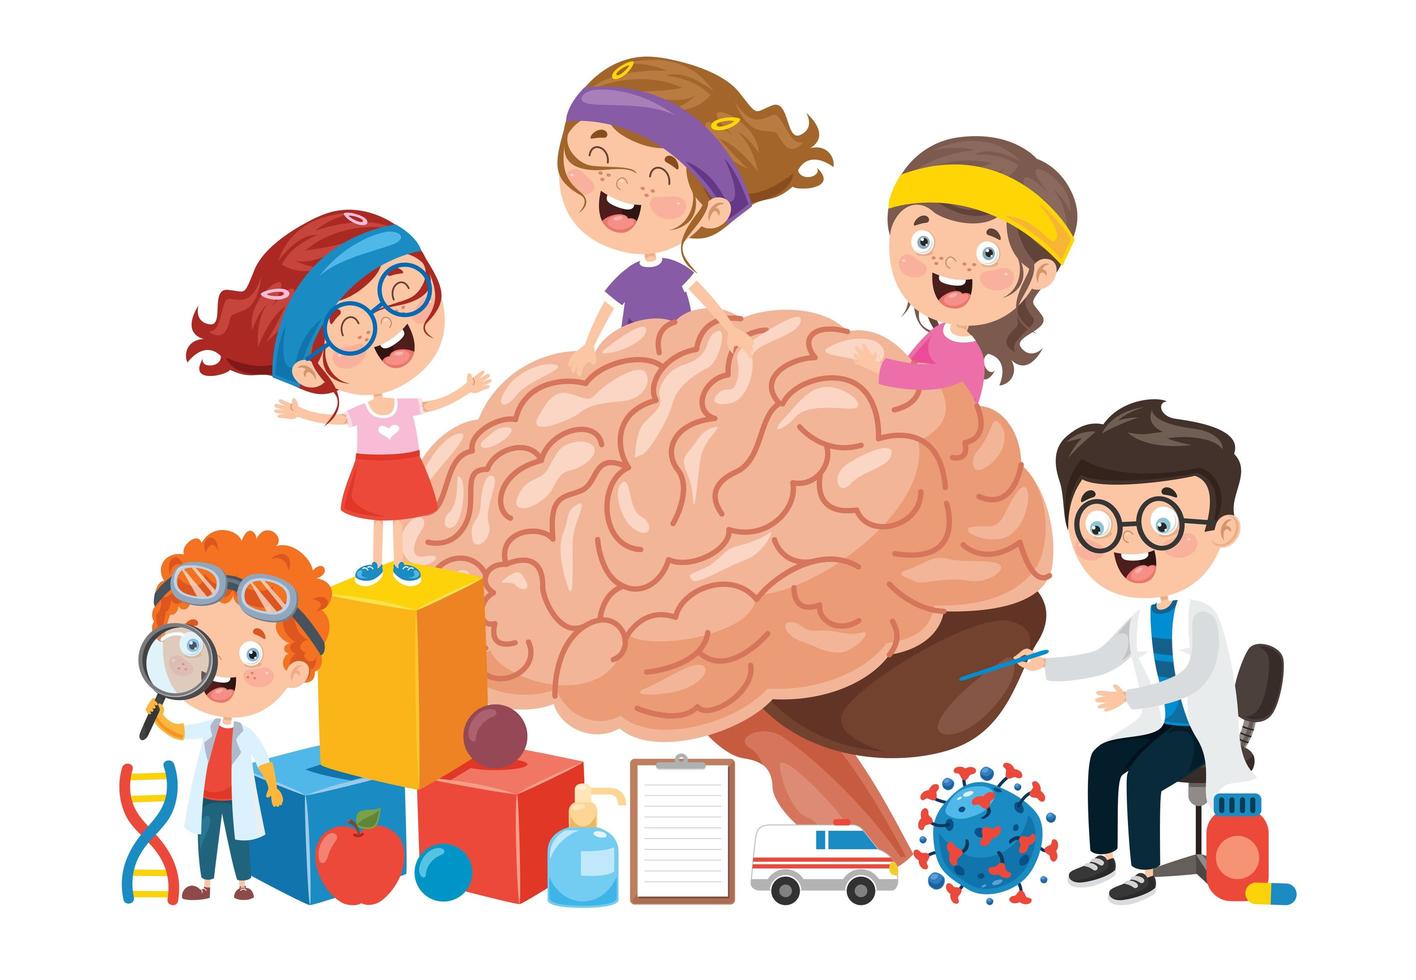 conceito de desenho animado do cérebro humano e crianças vetor